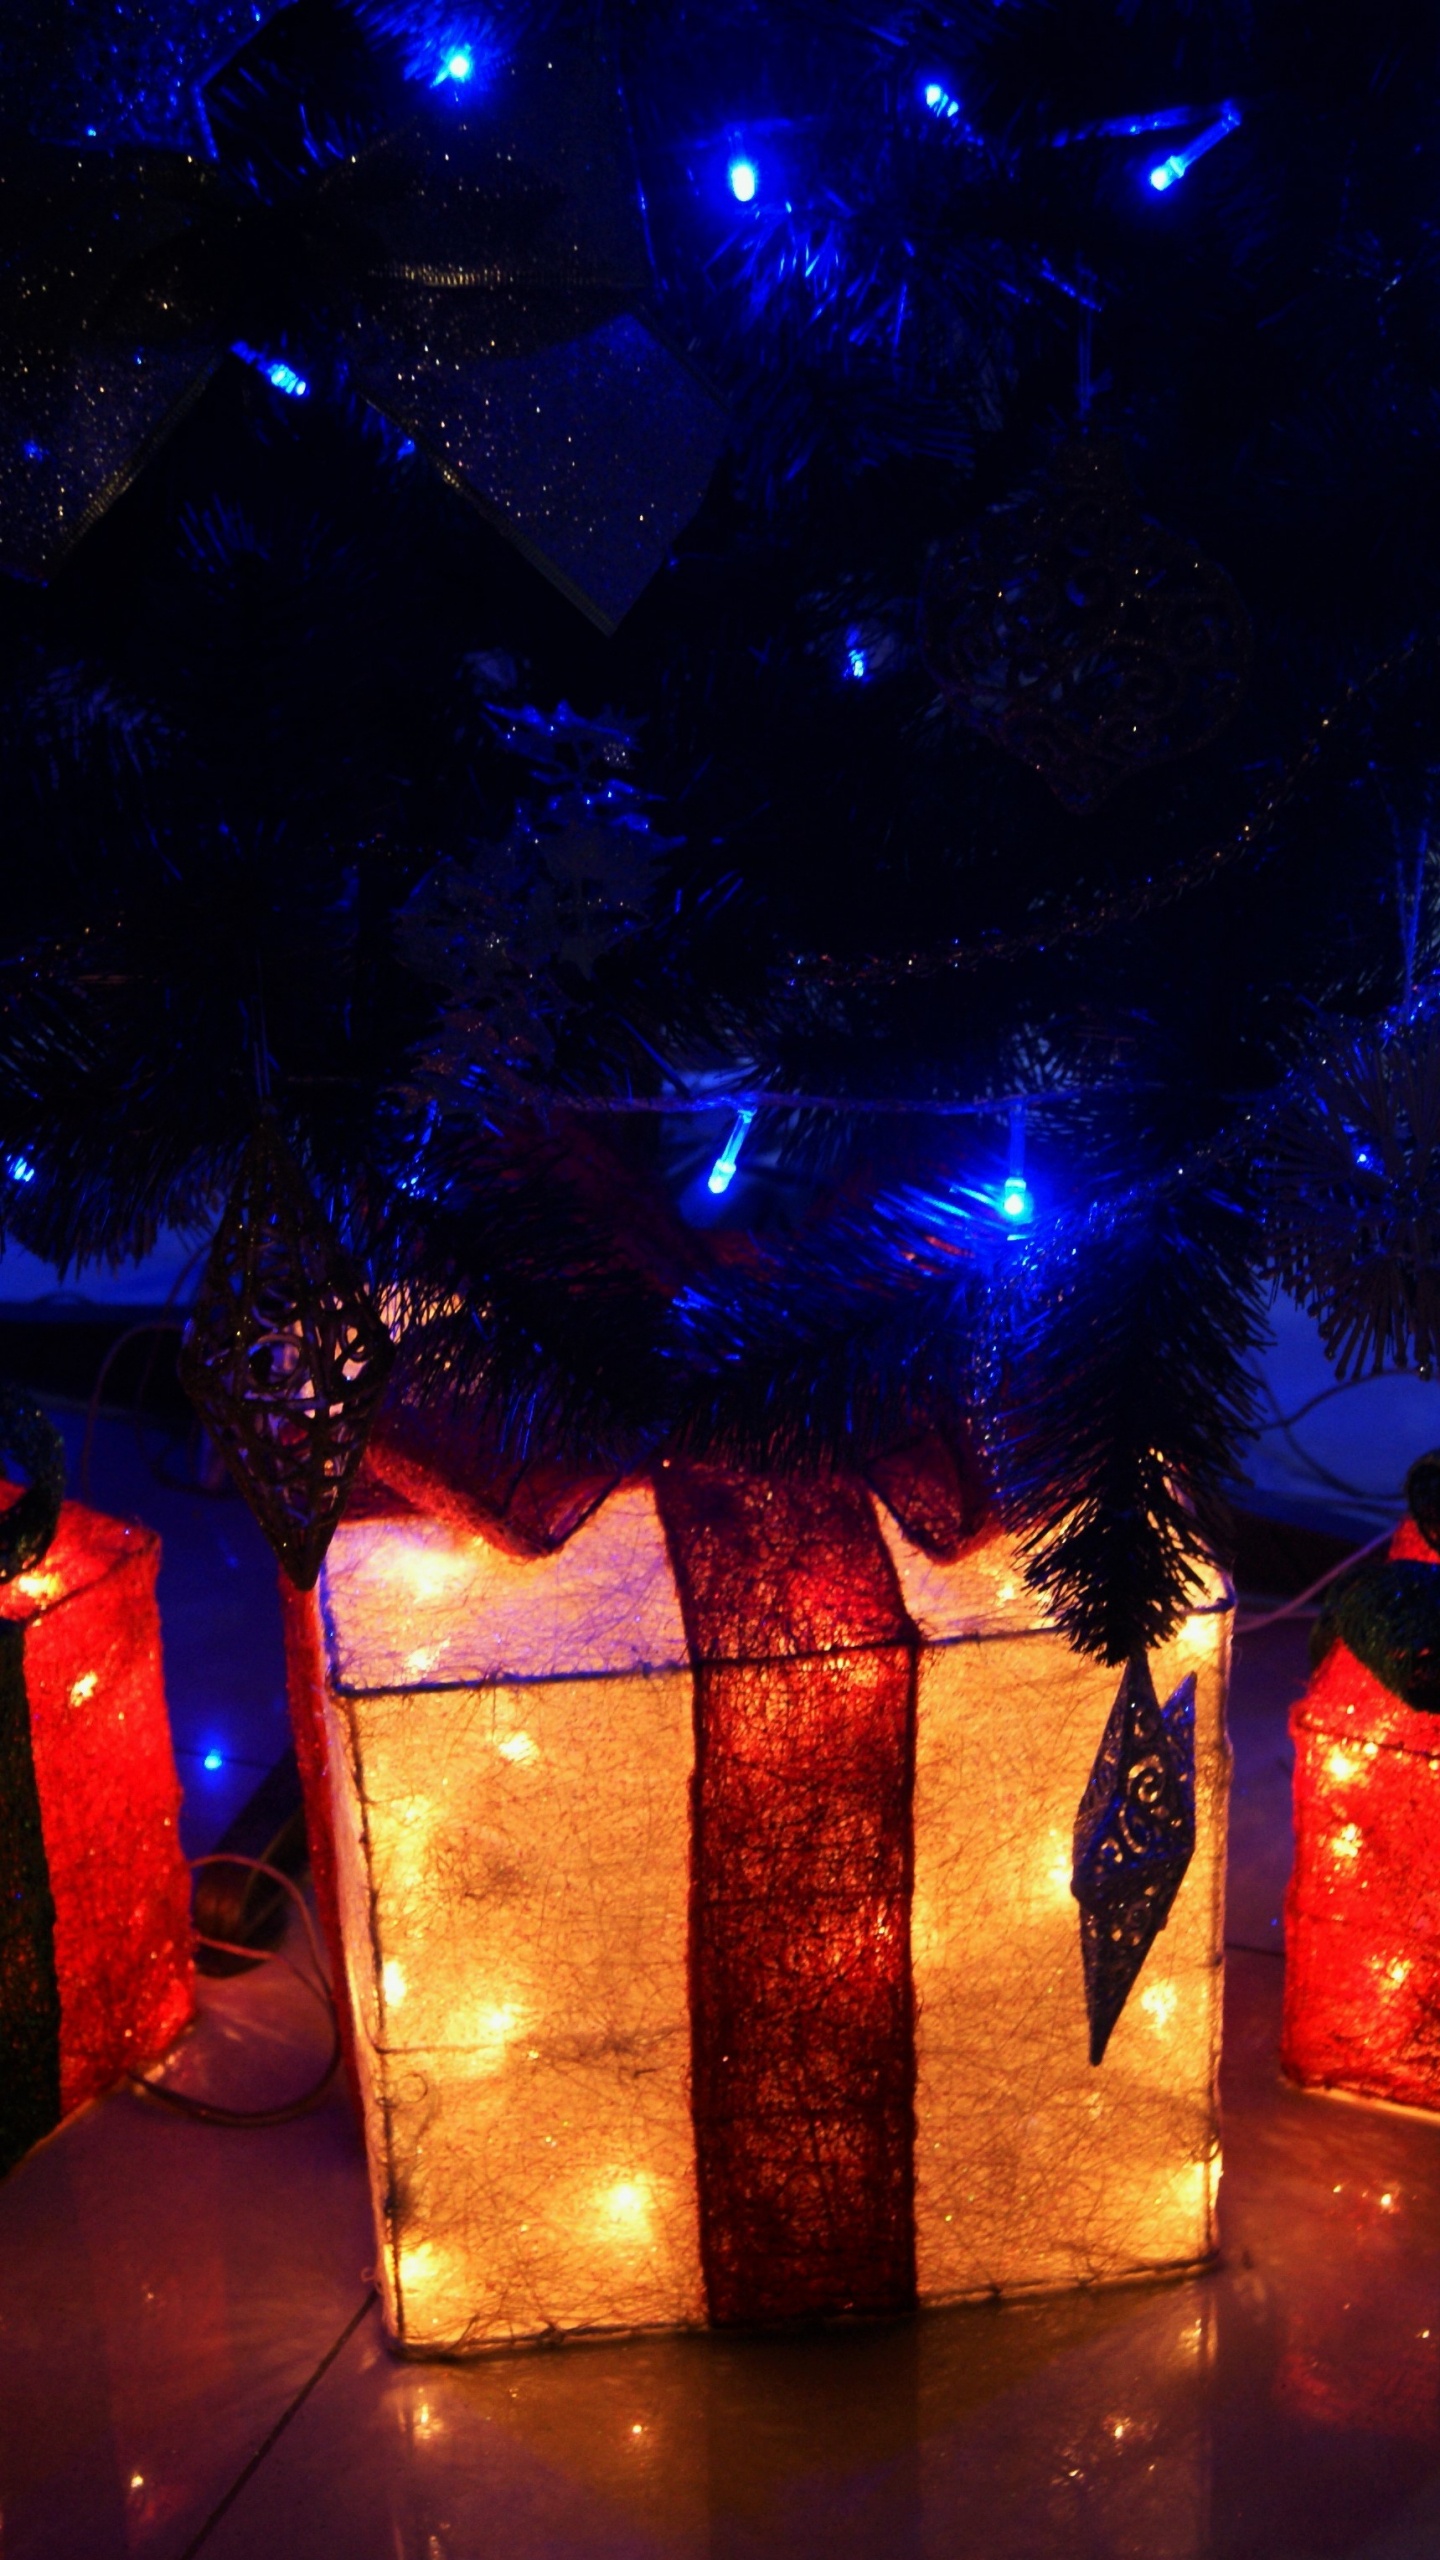 Licht, Weihnachtsbeleuchtung, Neujahr, Weihnachten, Neujahr Baum. Wallpaper in 1440x2560 Resolution